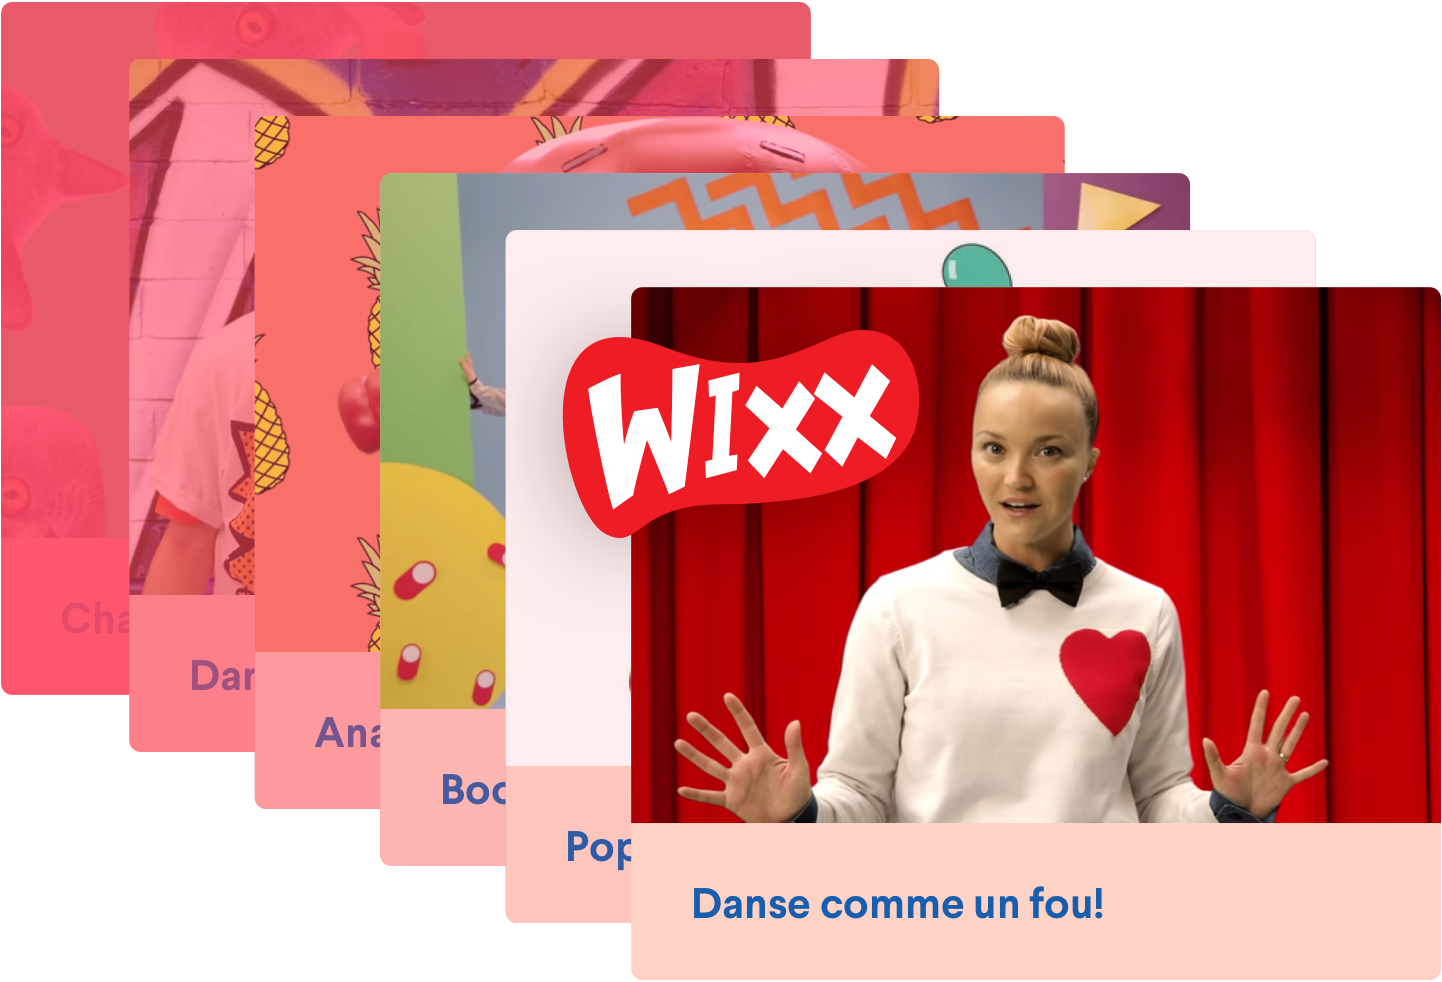 WIXX activities